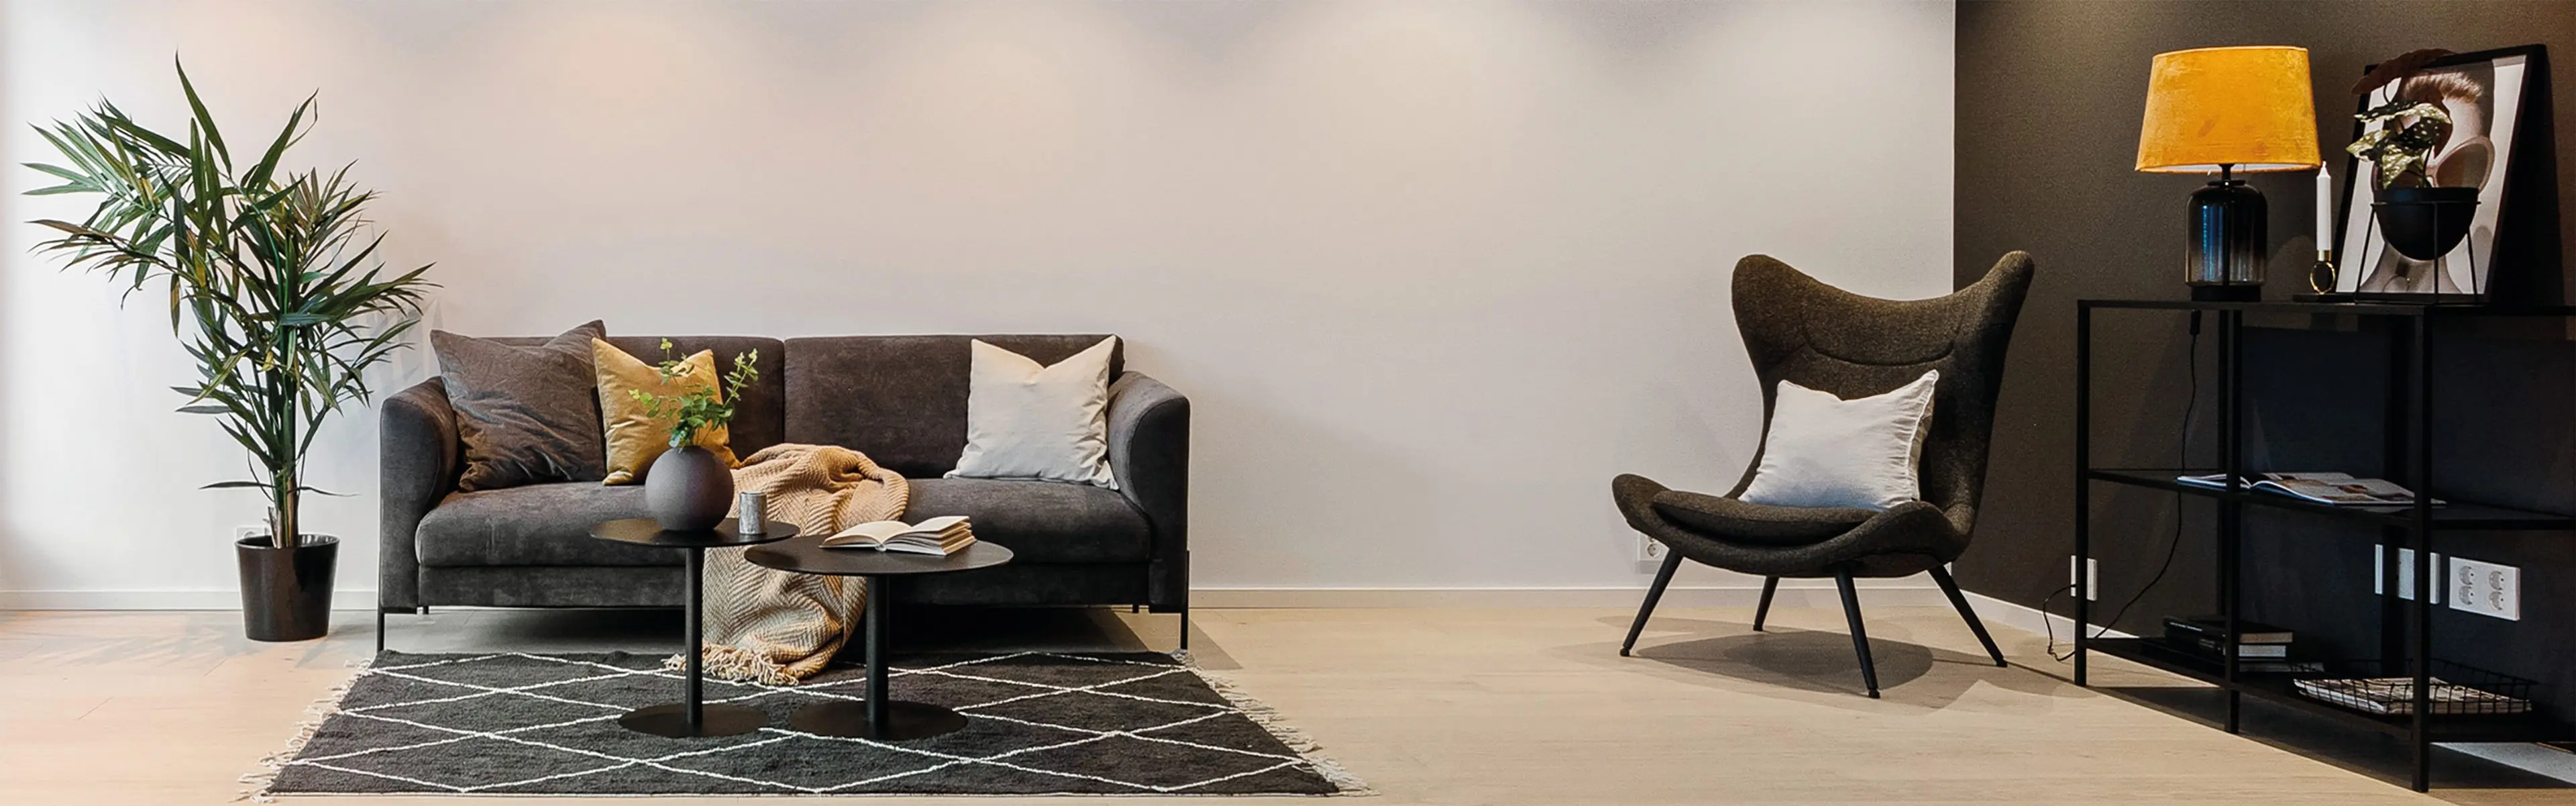 moderne stue med glatte, lysmalte vegger og sort fondvegg